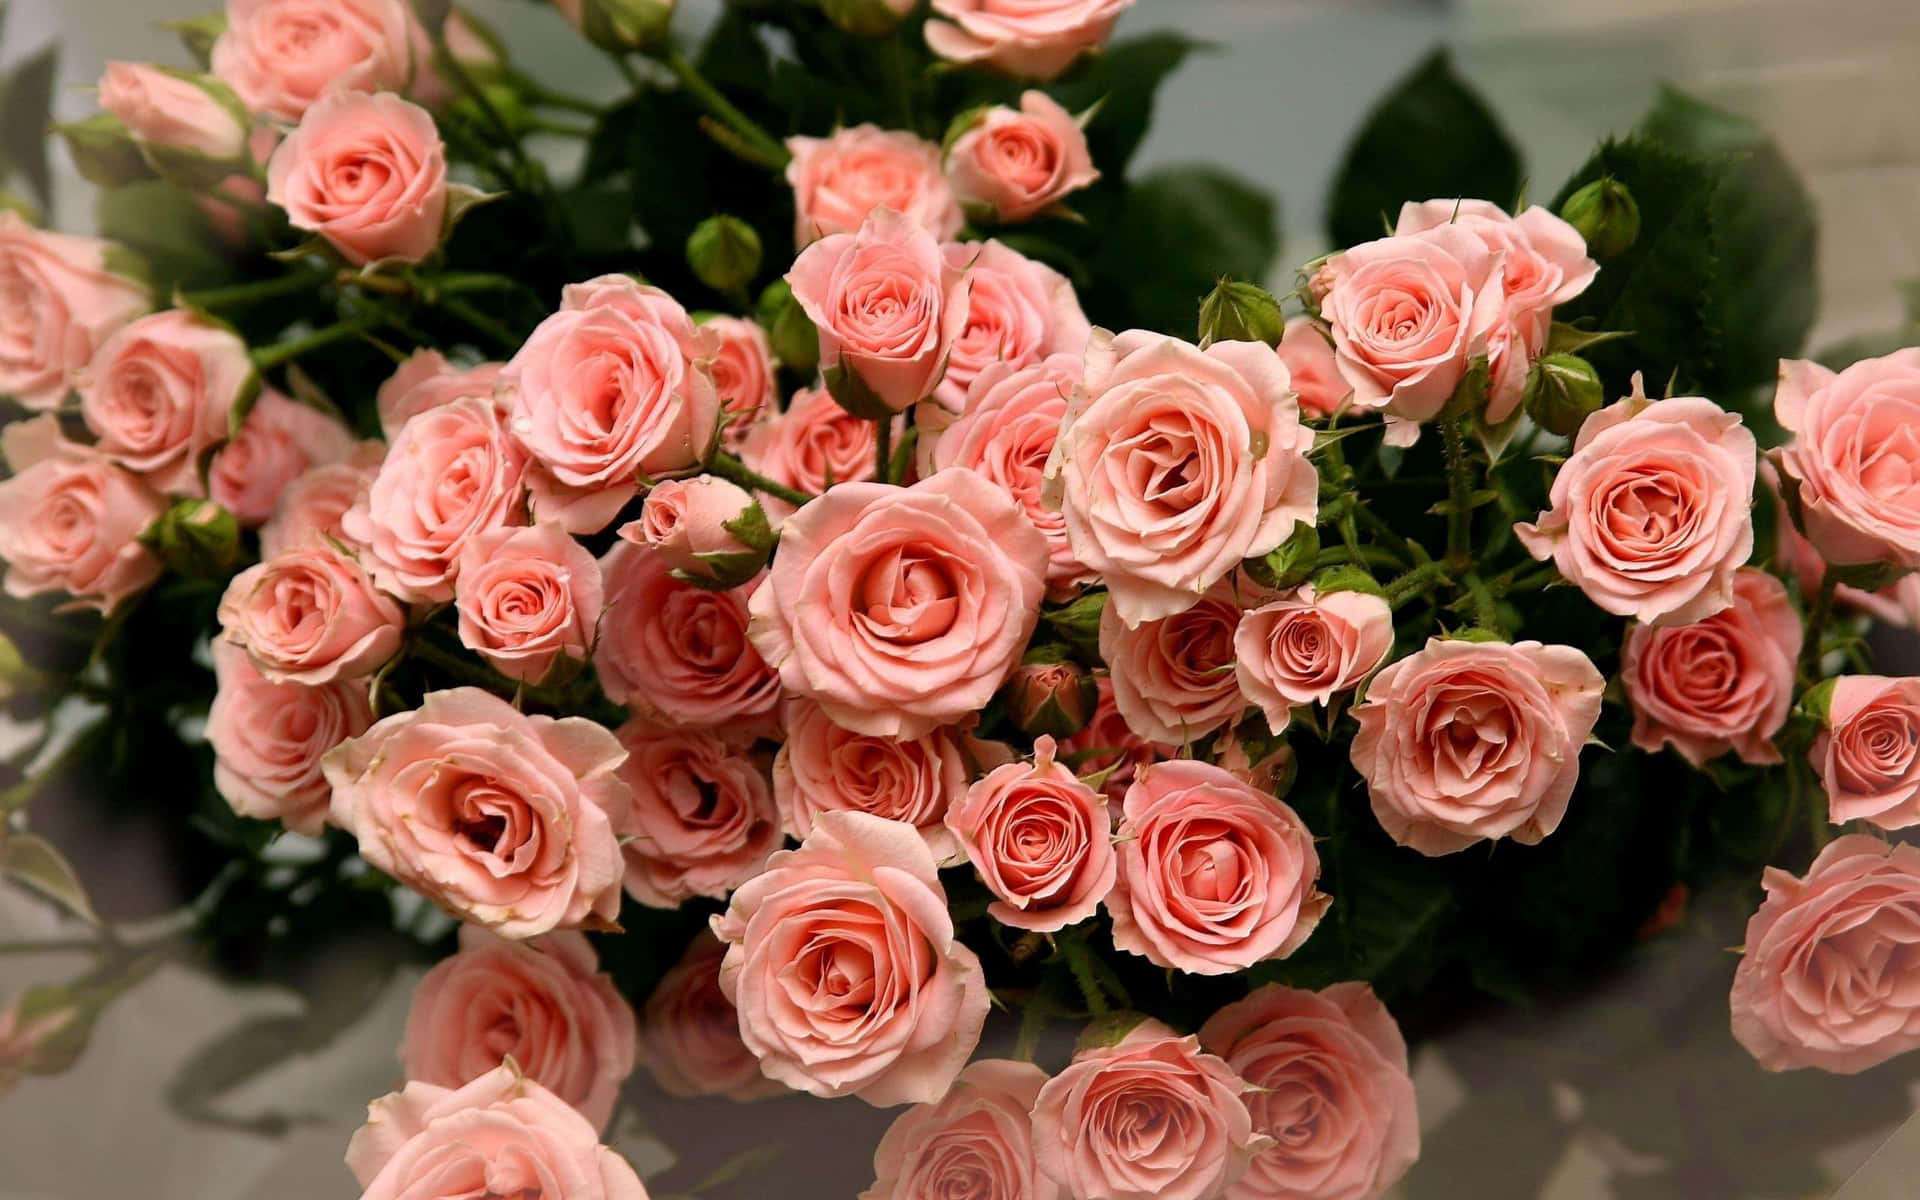 Einwunderschöner Strauß Duftender Rosa Rosen